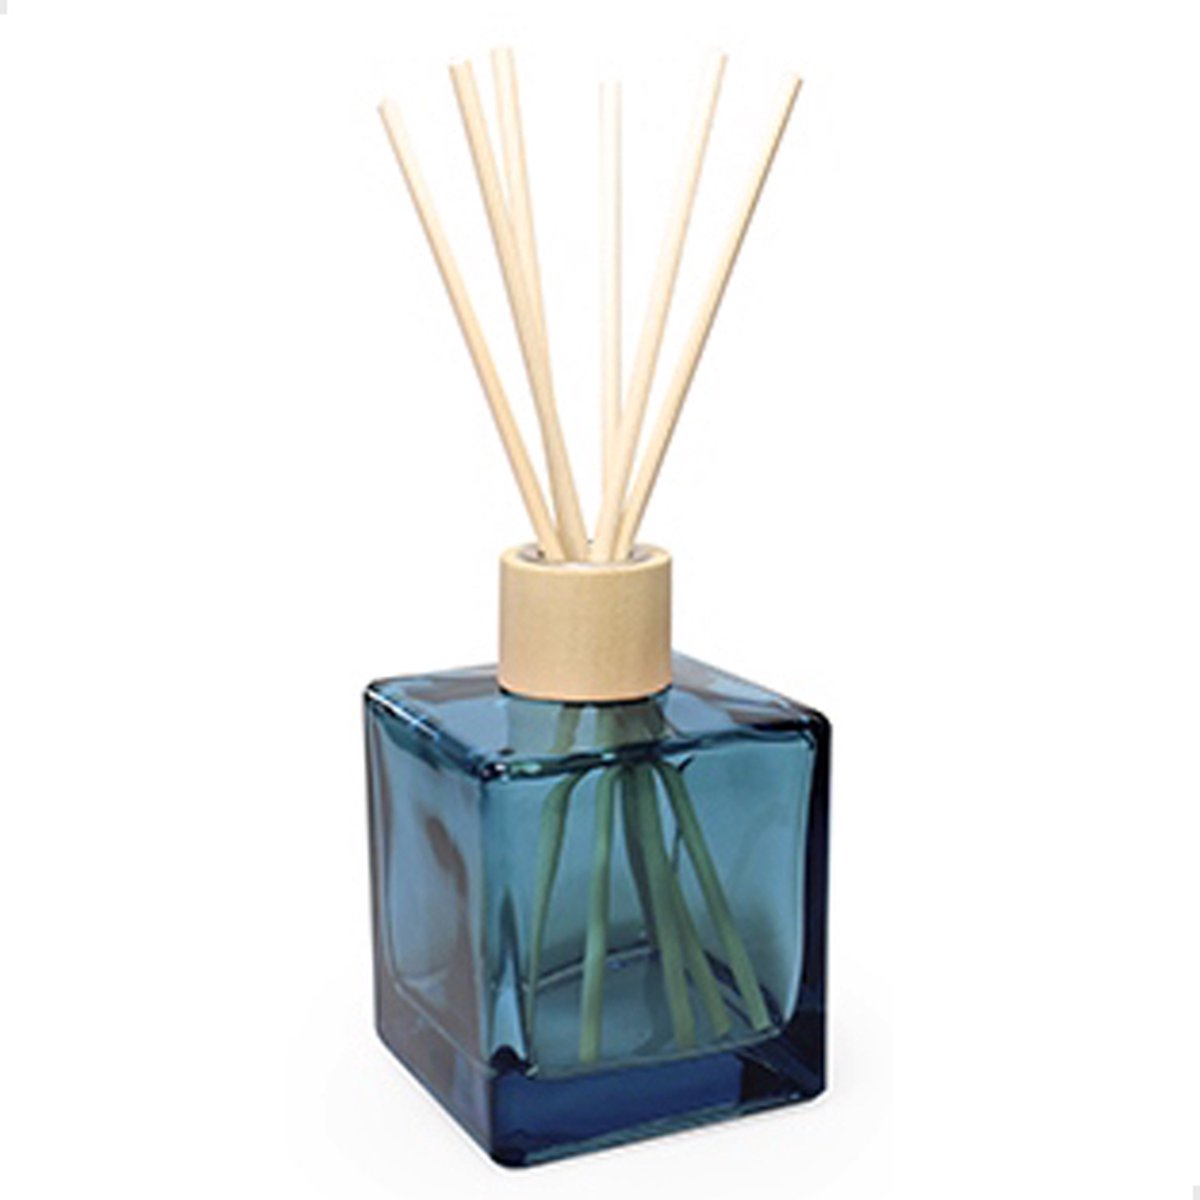 Vanhalst - Kubus fles SILVER BLUE 300ml met houten dop en 6 houten geurstokjes - Ook beschikbaar in kleiner formaat - Om zelf te vullen